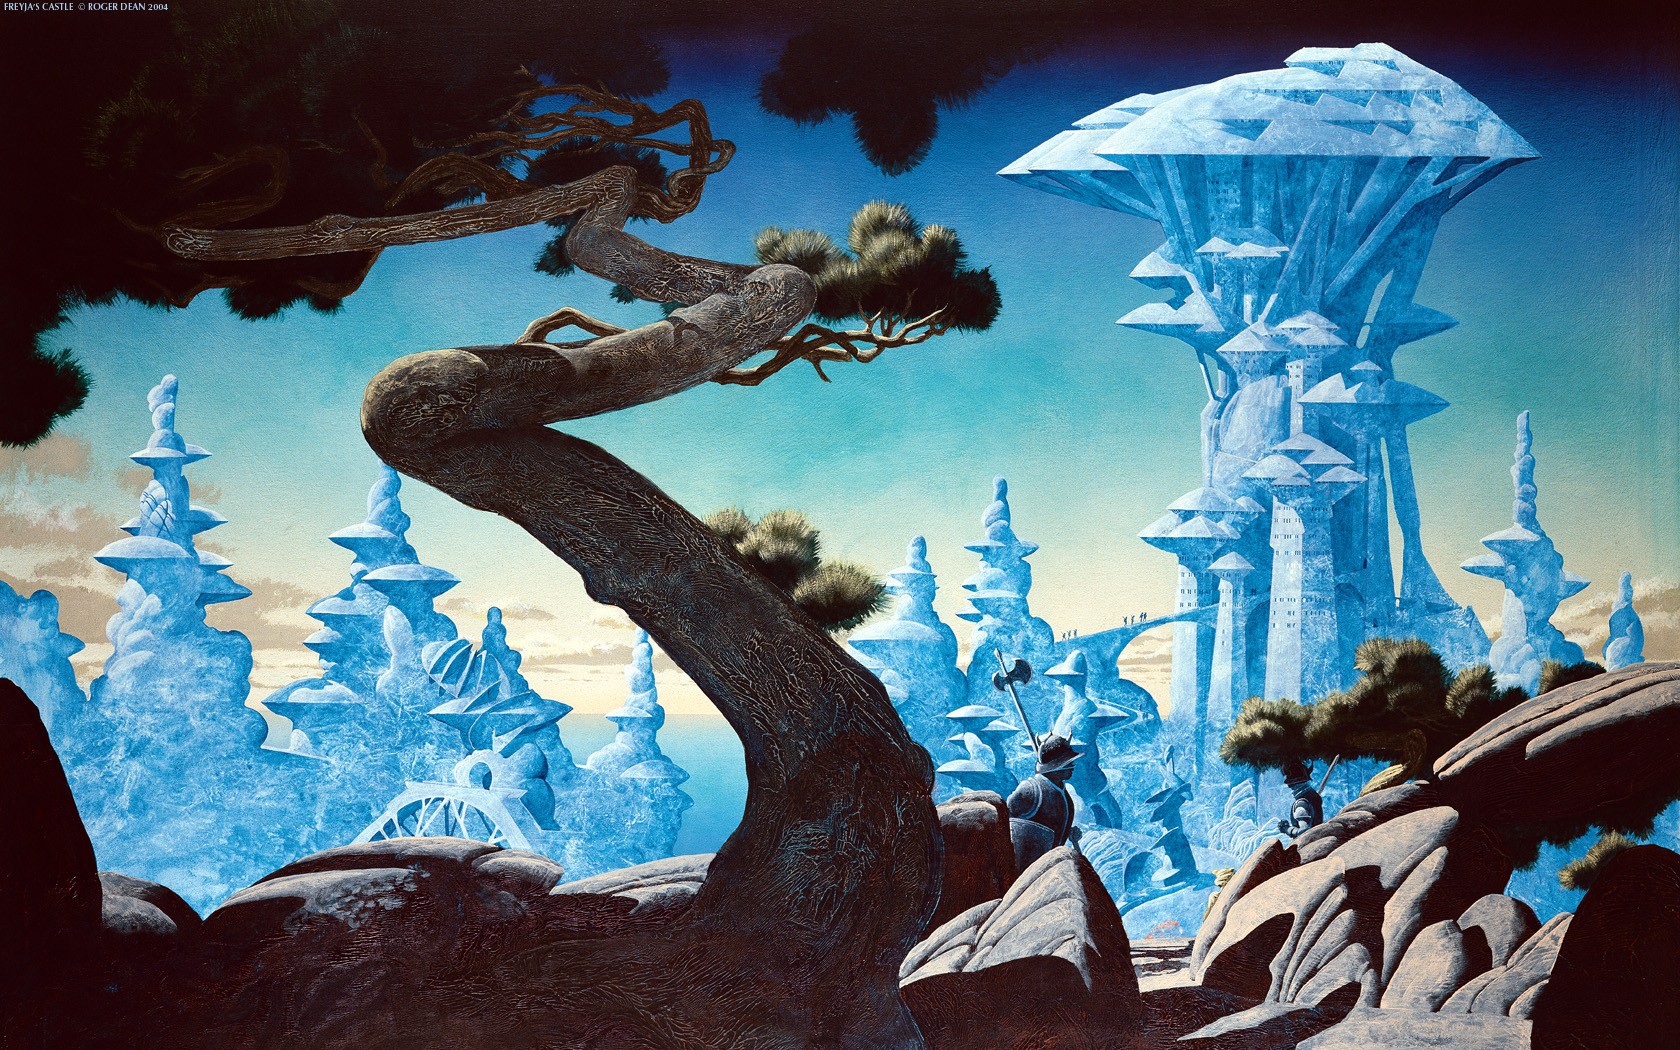 Roger Dean, Knight, Digital art, Fantasy art, Nature, Trees, Branch, Rock, Castle Wallpaper